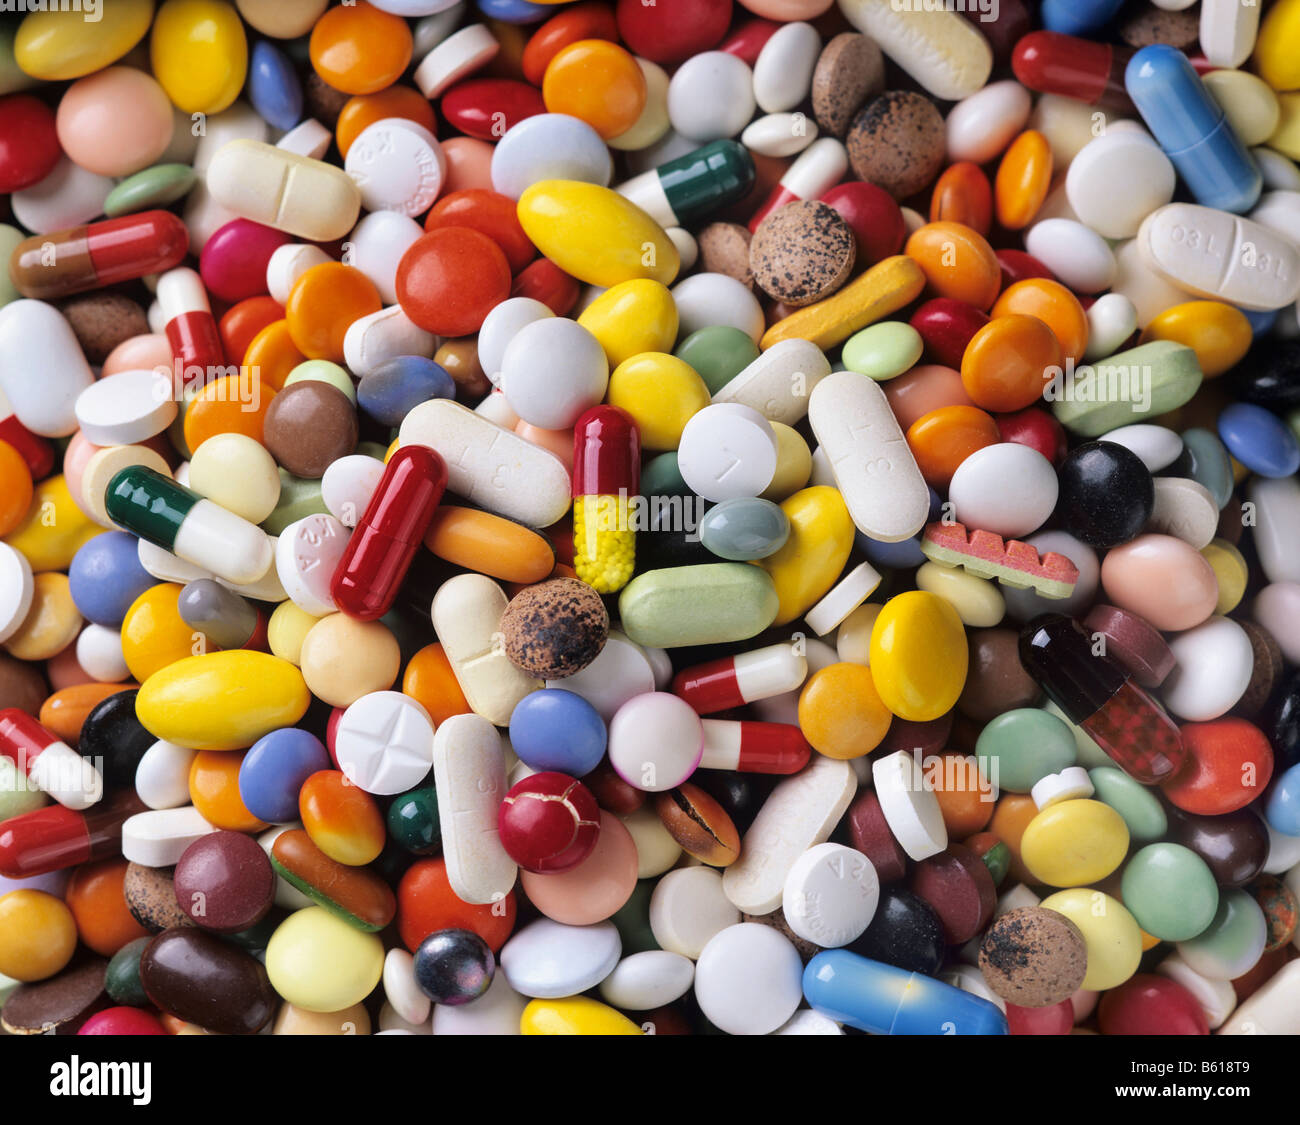 Abgelaufen Medizin, geknackt und verblasst, Pillen, Kapseln und Tabletten, full-frame Stockfoto